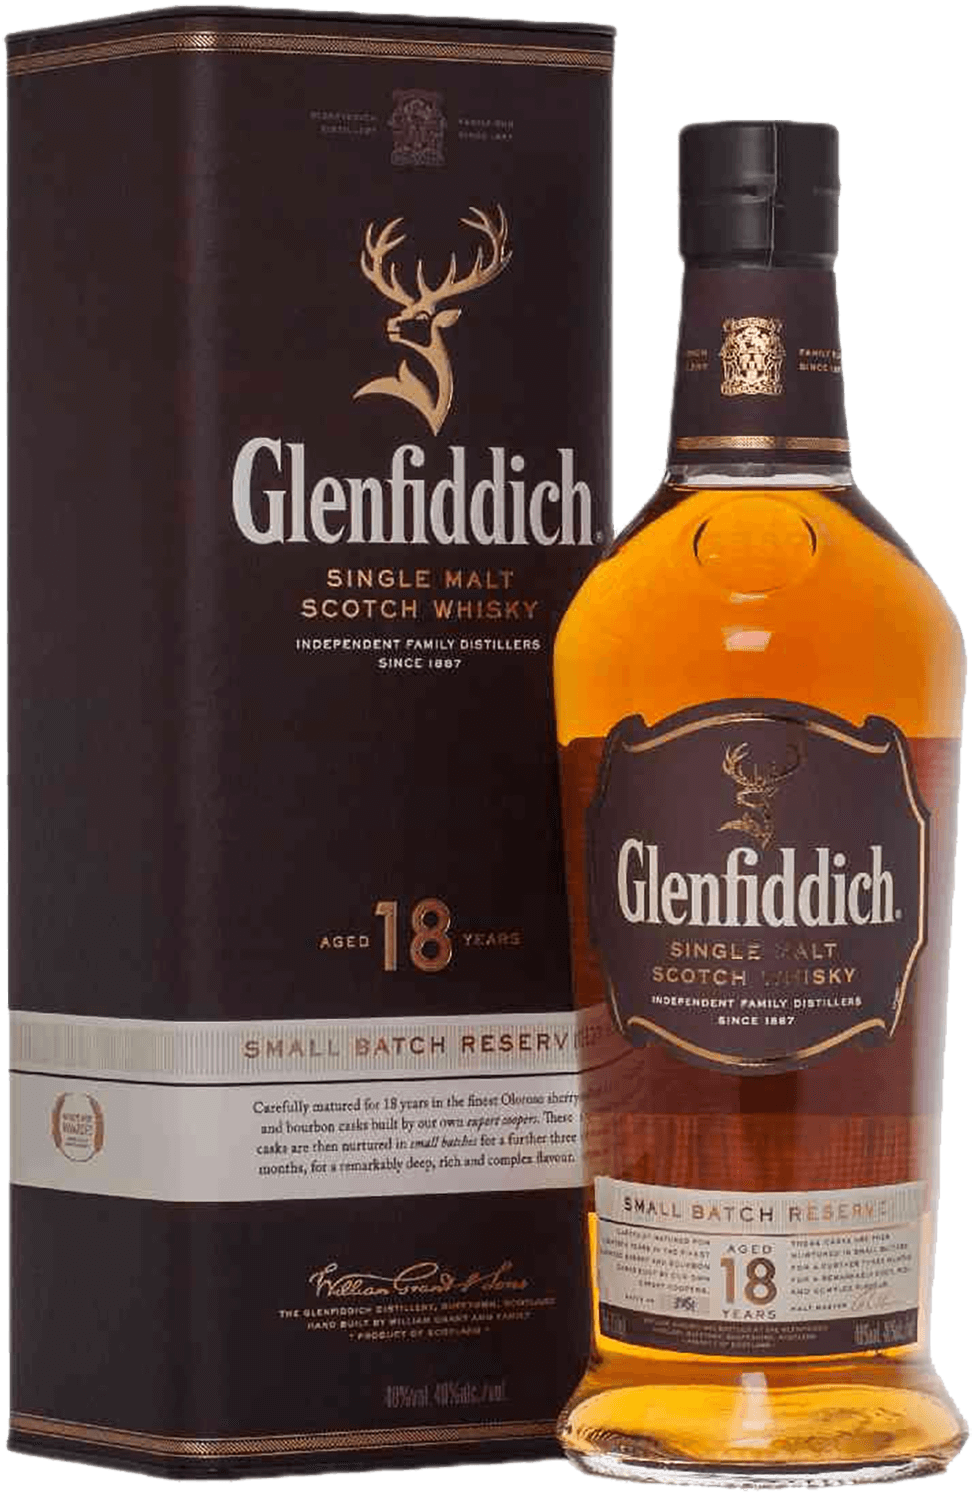 Glenfiddich 18 y.o. Single Malt Scotch Whisky (gift box) glenfiddich 18 years old single malt scotch whisky gift box